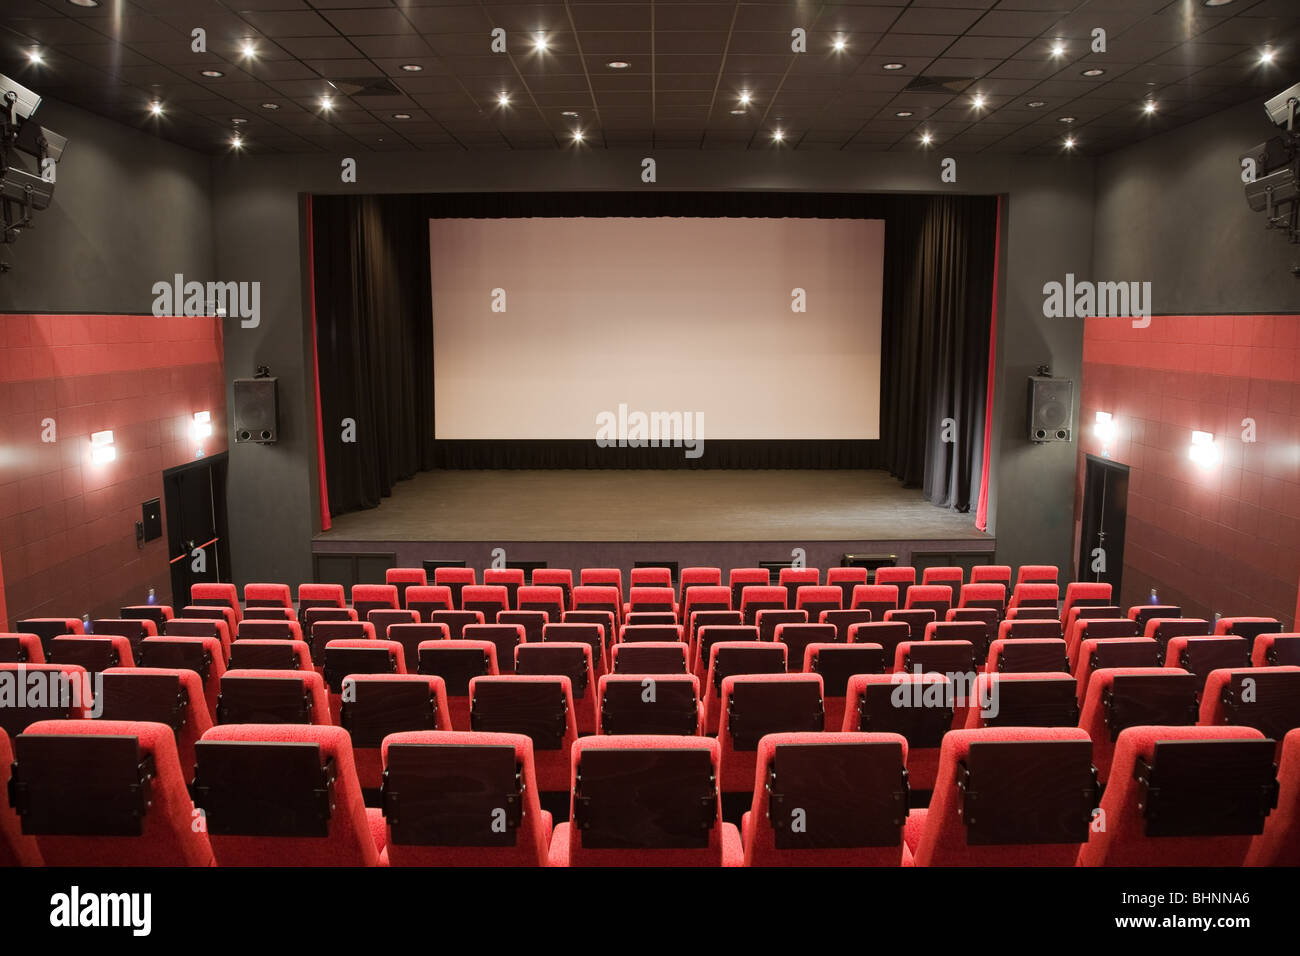 Leeren Kinosaal mit rote Stühle, Bühne und Projektion Schirm. Bereit für Ihr eigenes Bild hinzufügen. Stockfoto